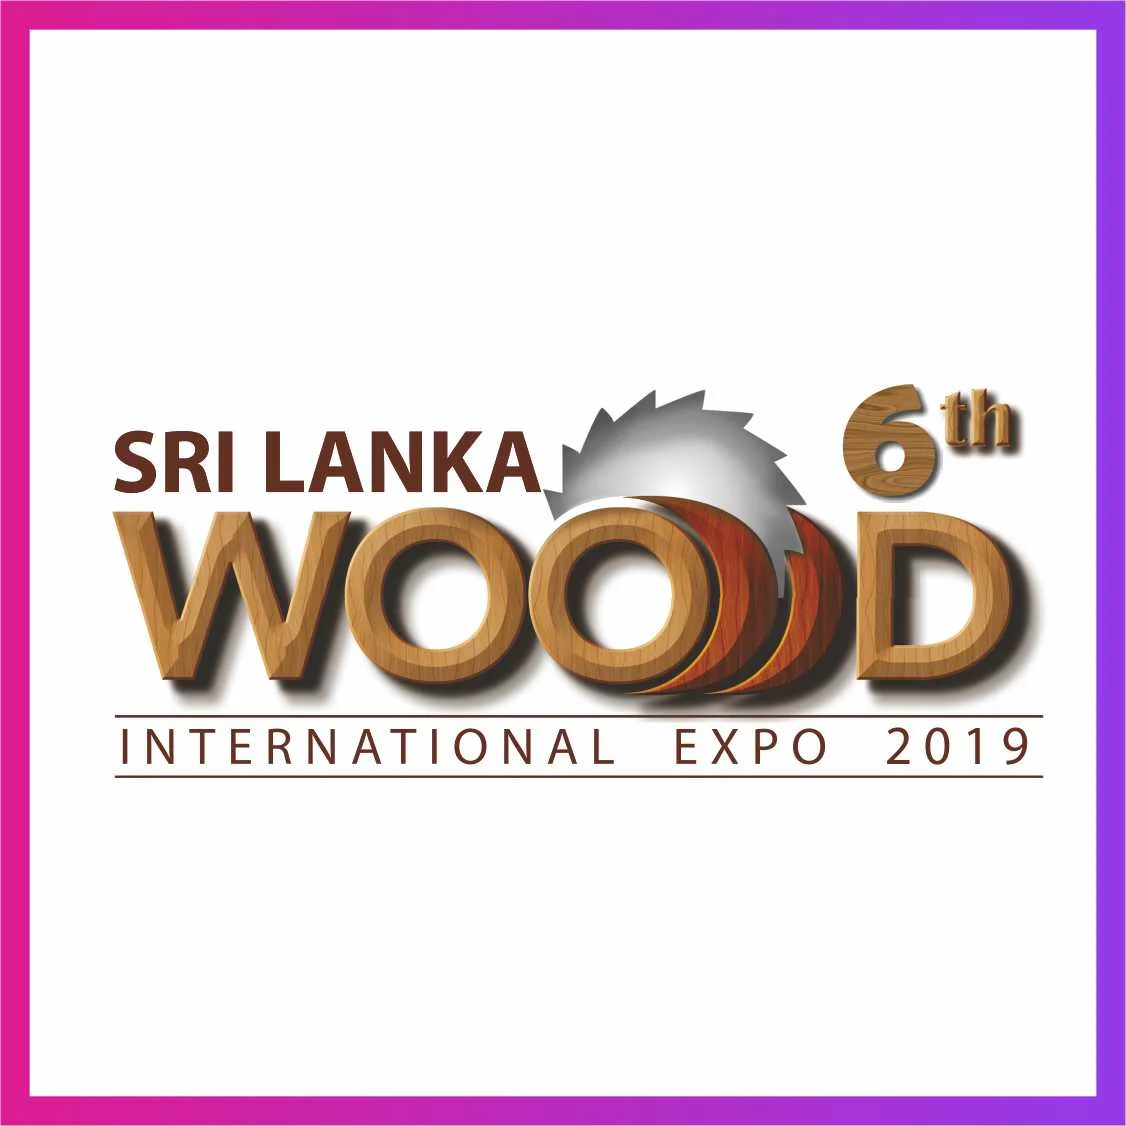 Sri Lanka Wood International Expo 2019